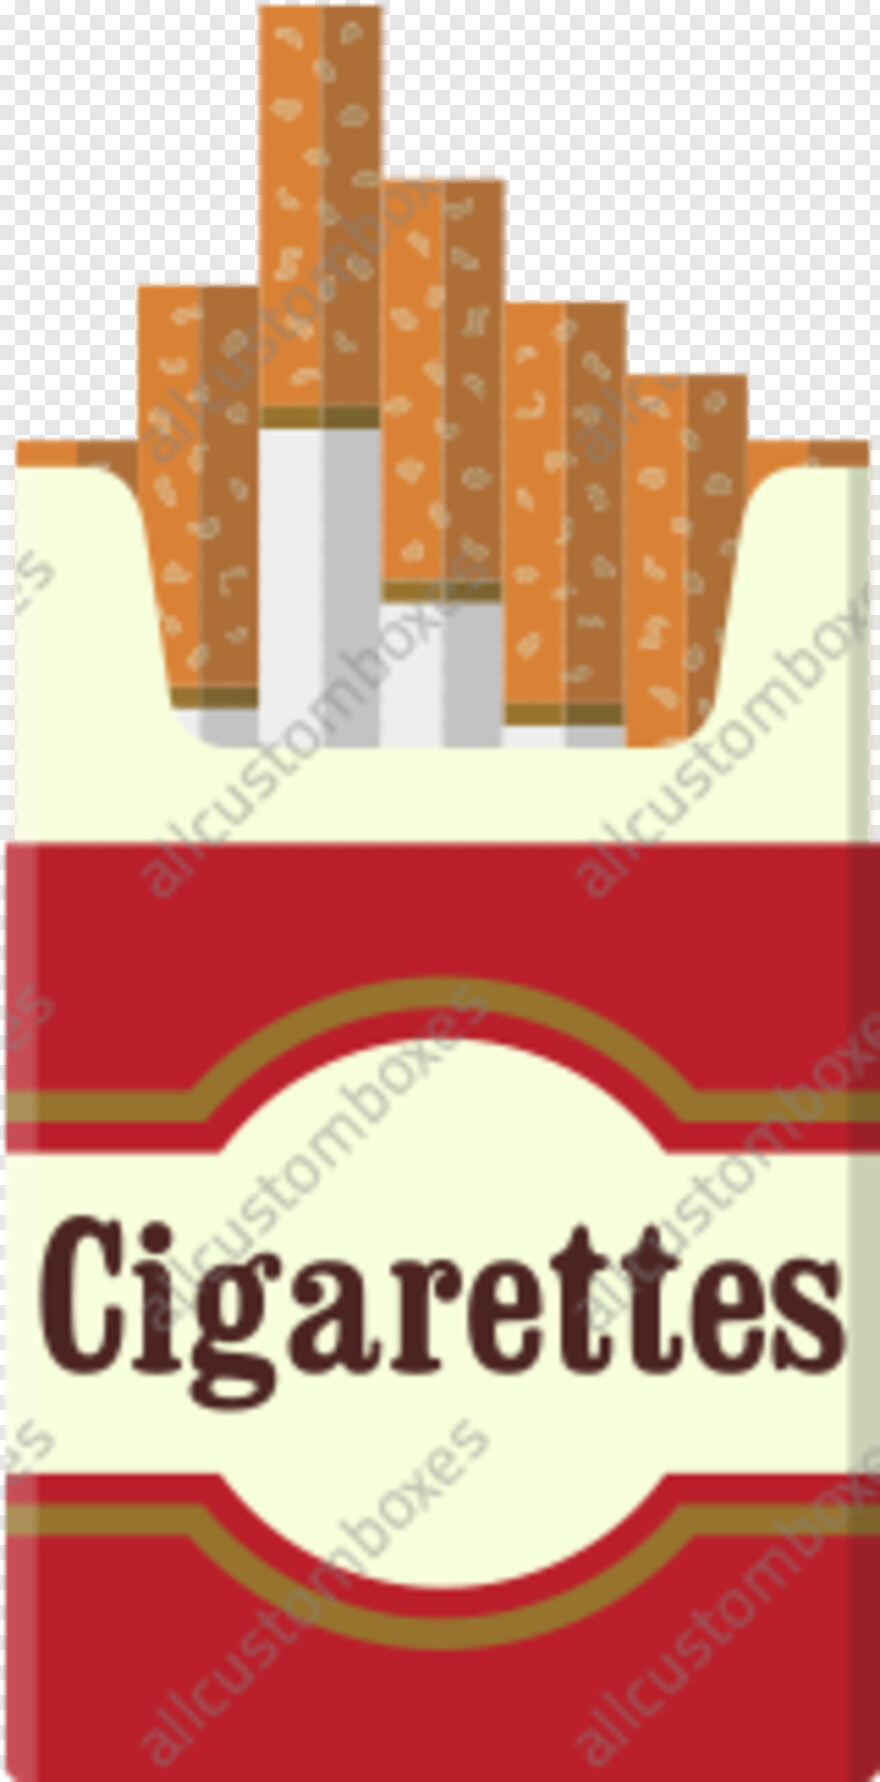 cigarette-smoke # 318985